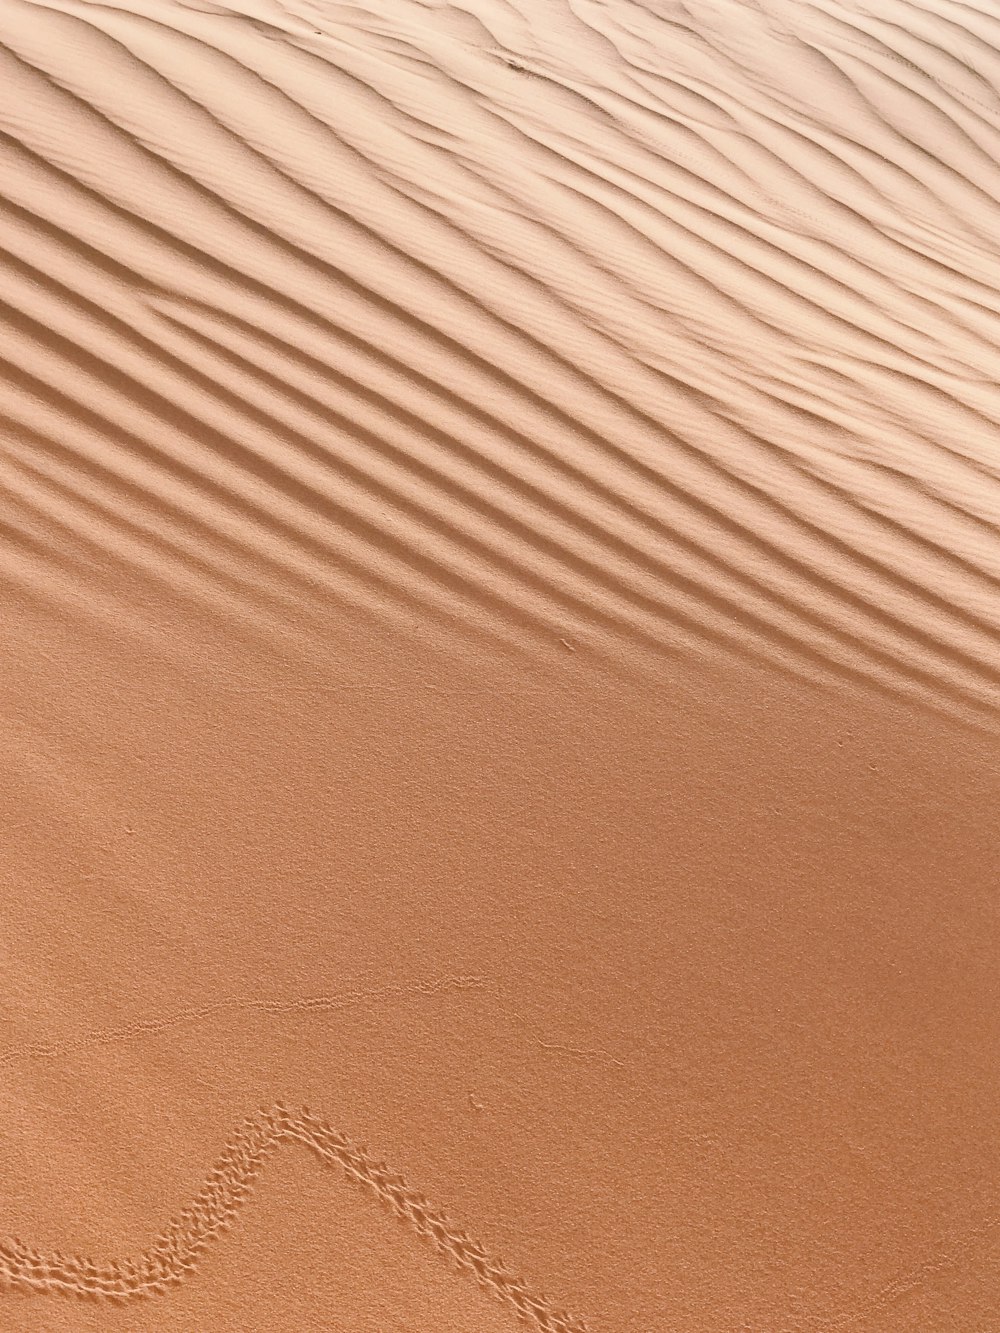 uma imagem de um coração desenhado na areia